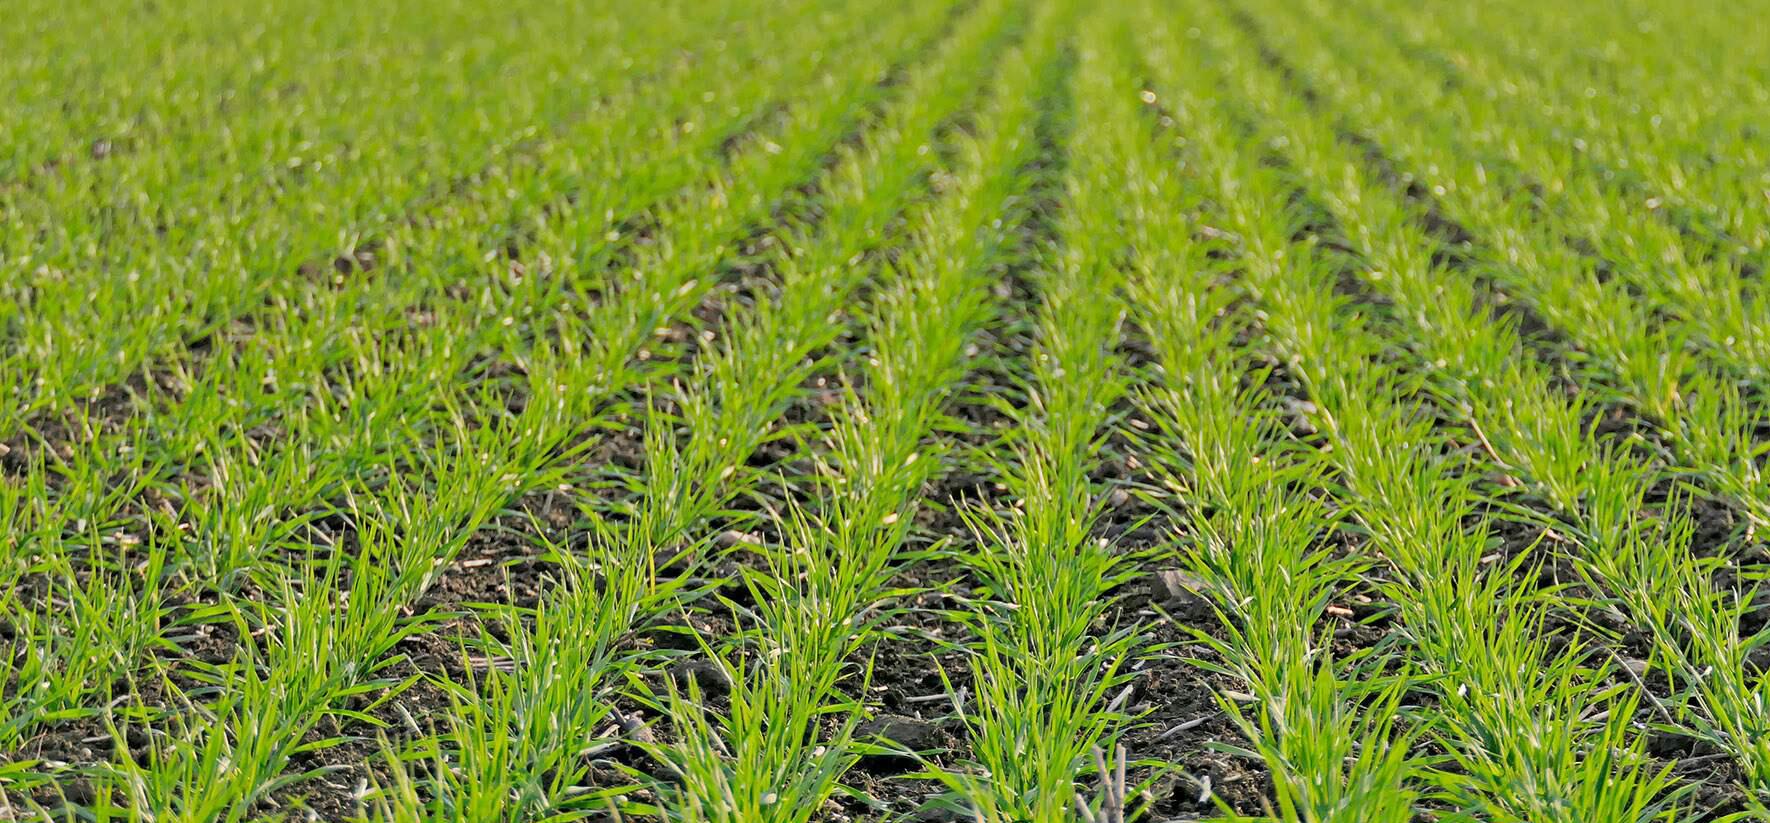 Optimización de la fertilización en trigo: uso estratégico de vivificantes y microgranulados